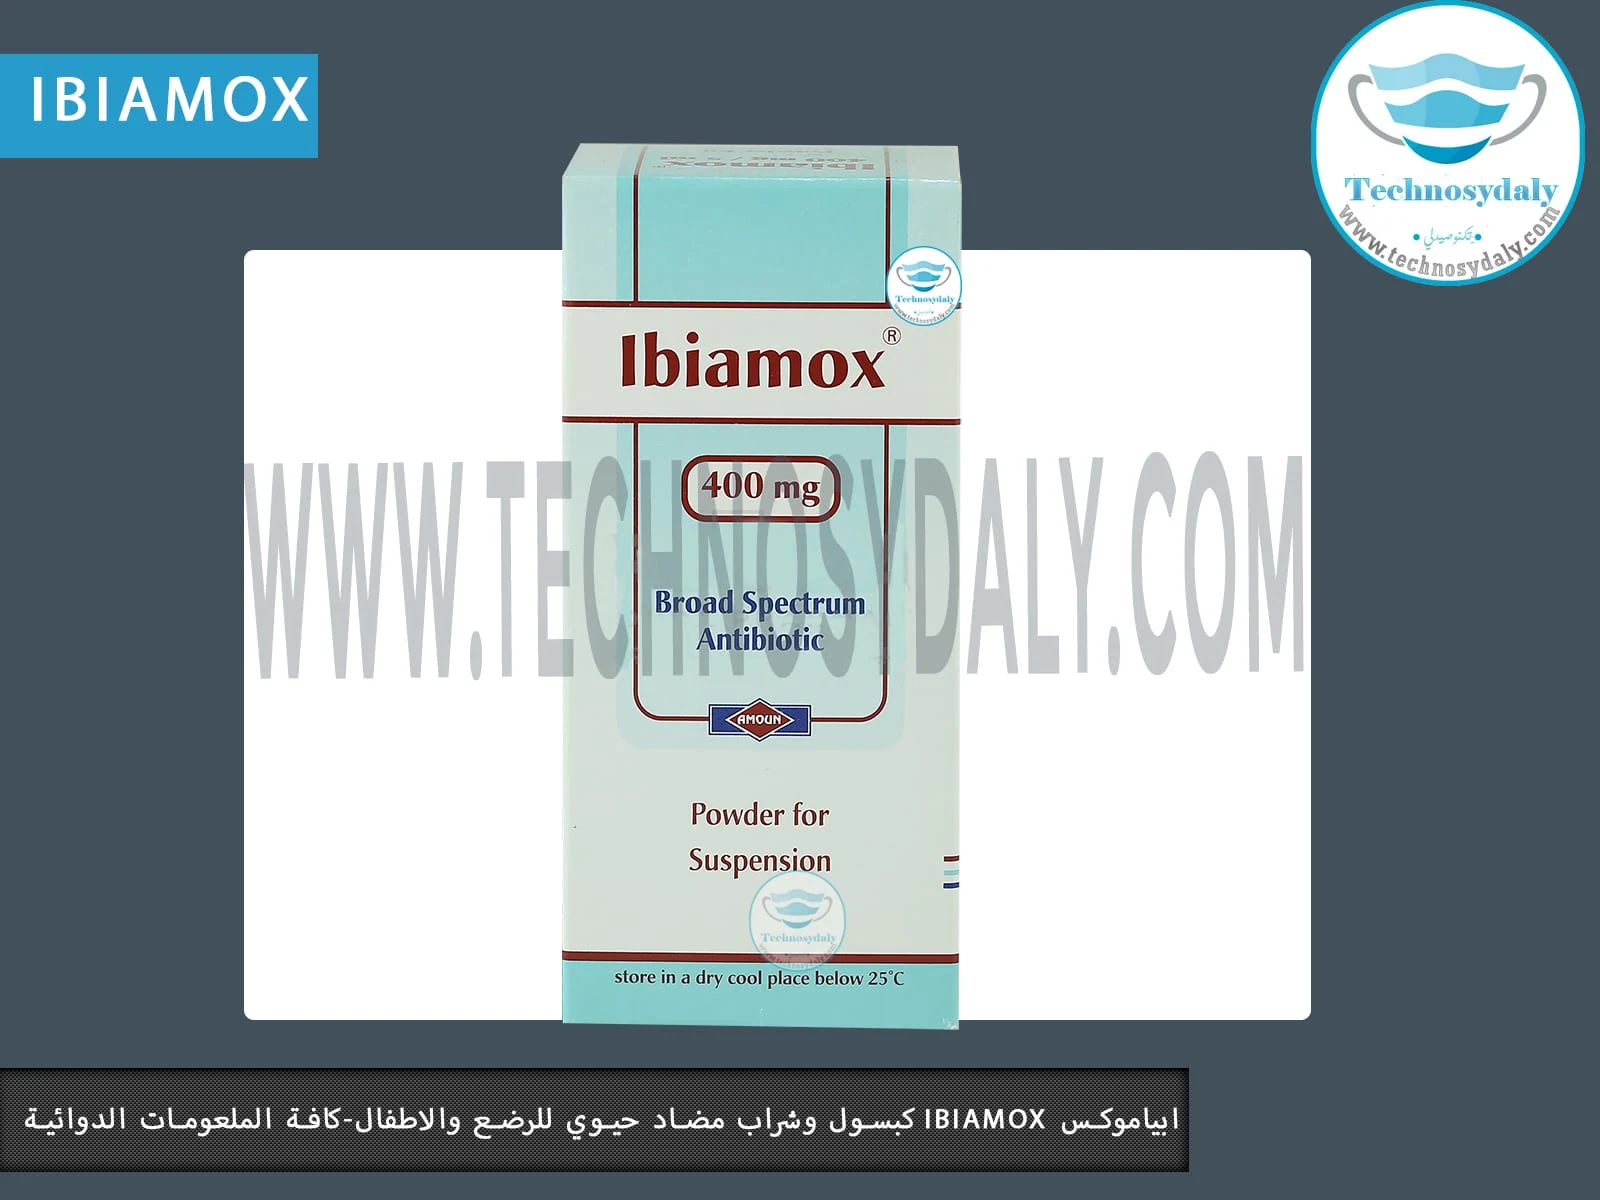 ابياموكس ibiamox كبسول وشراب مضاد حيوي للرضع والاطفال